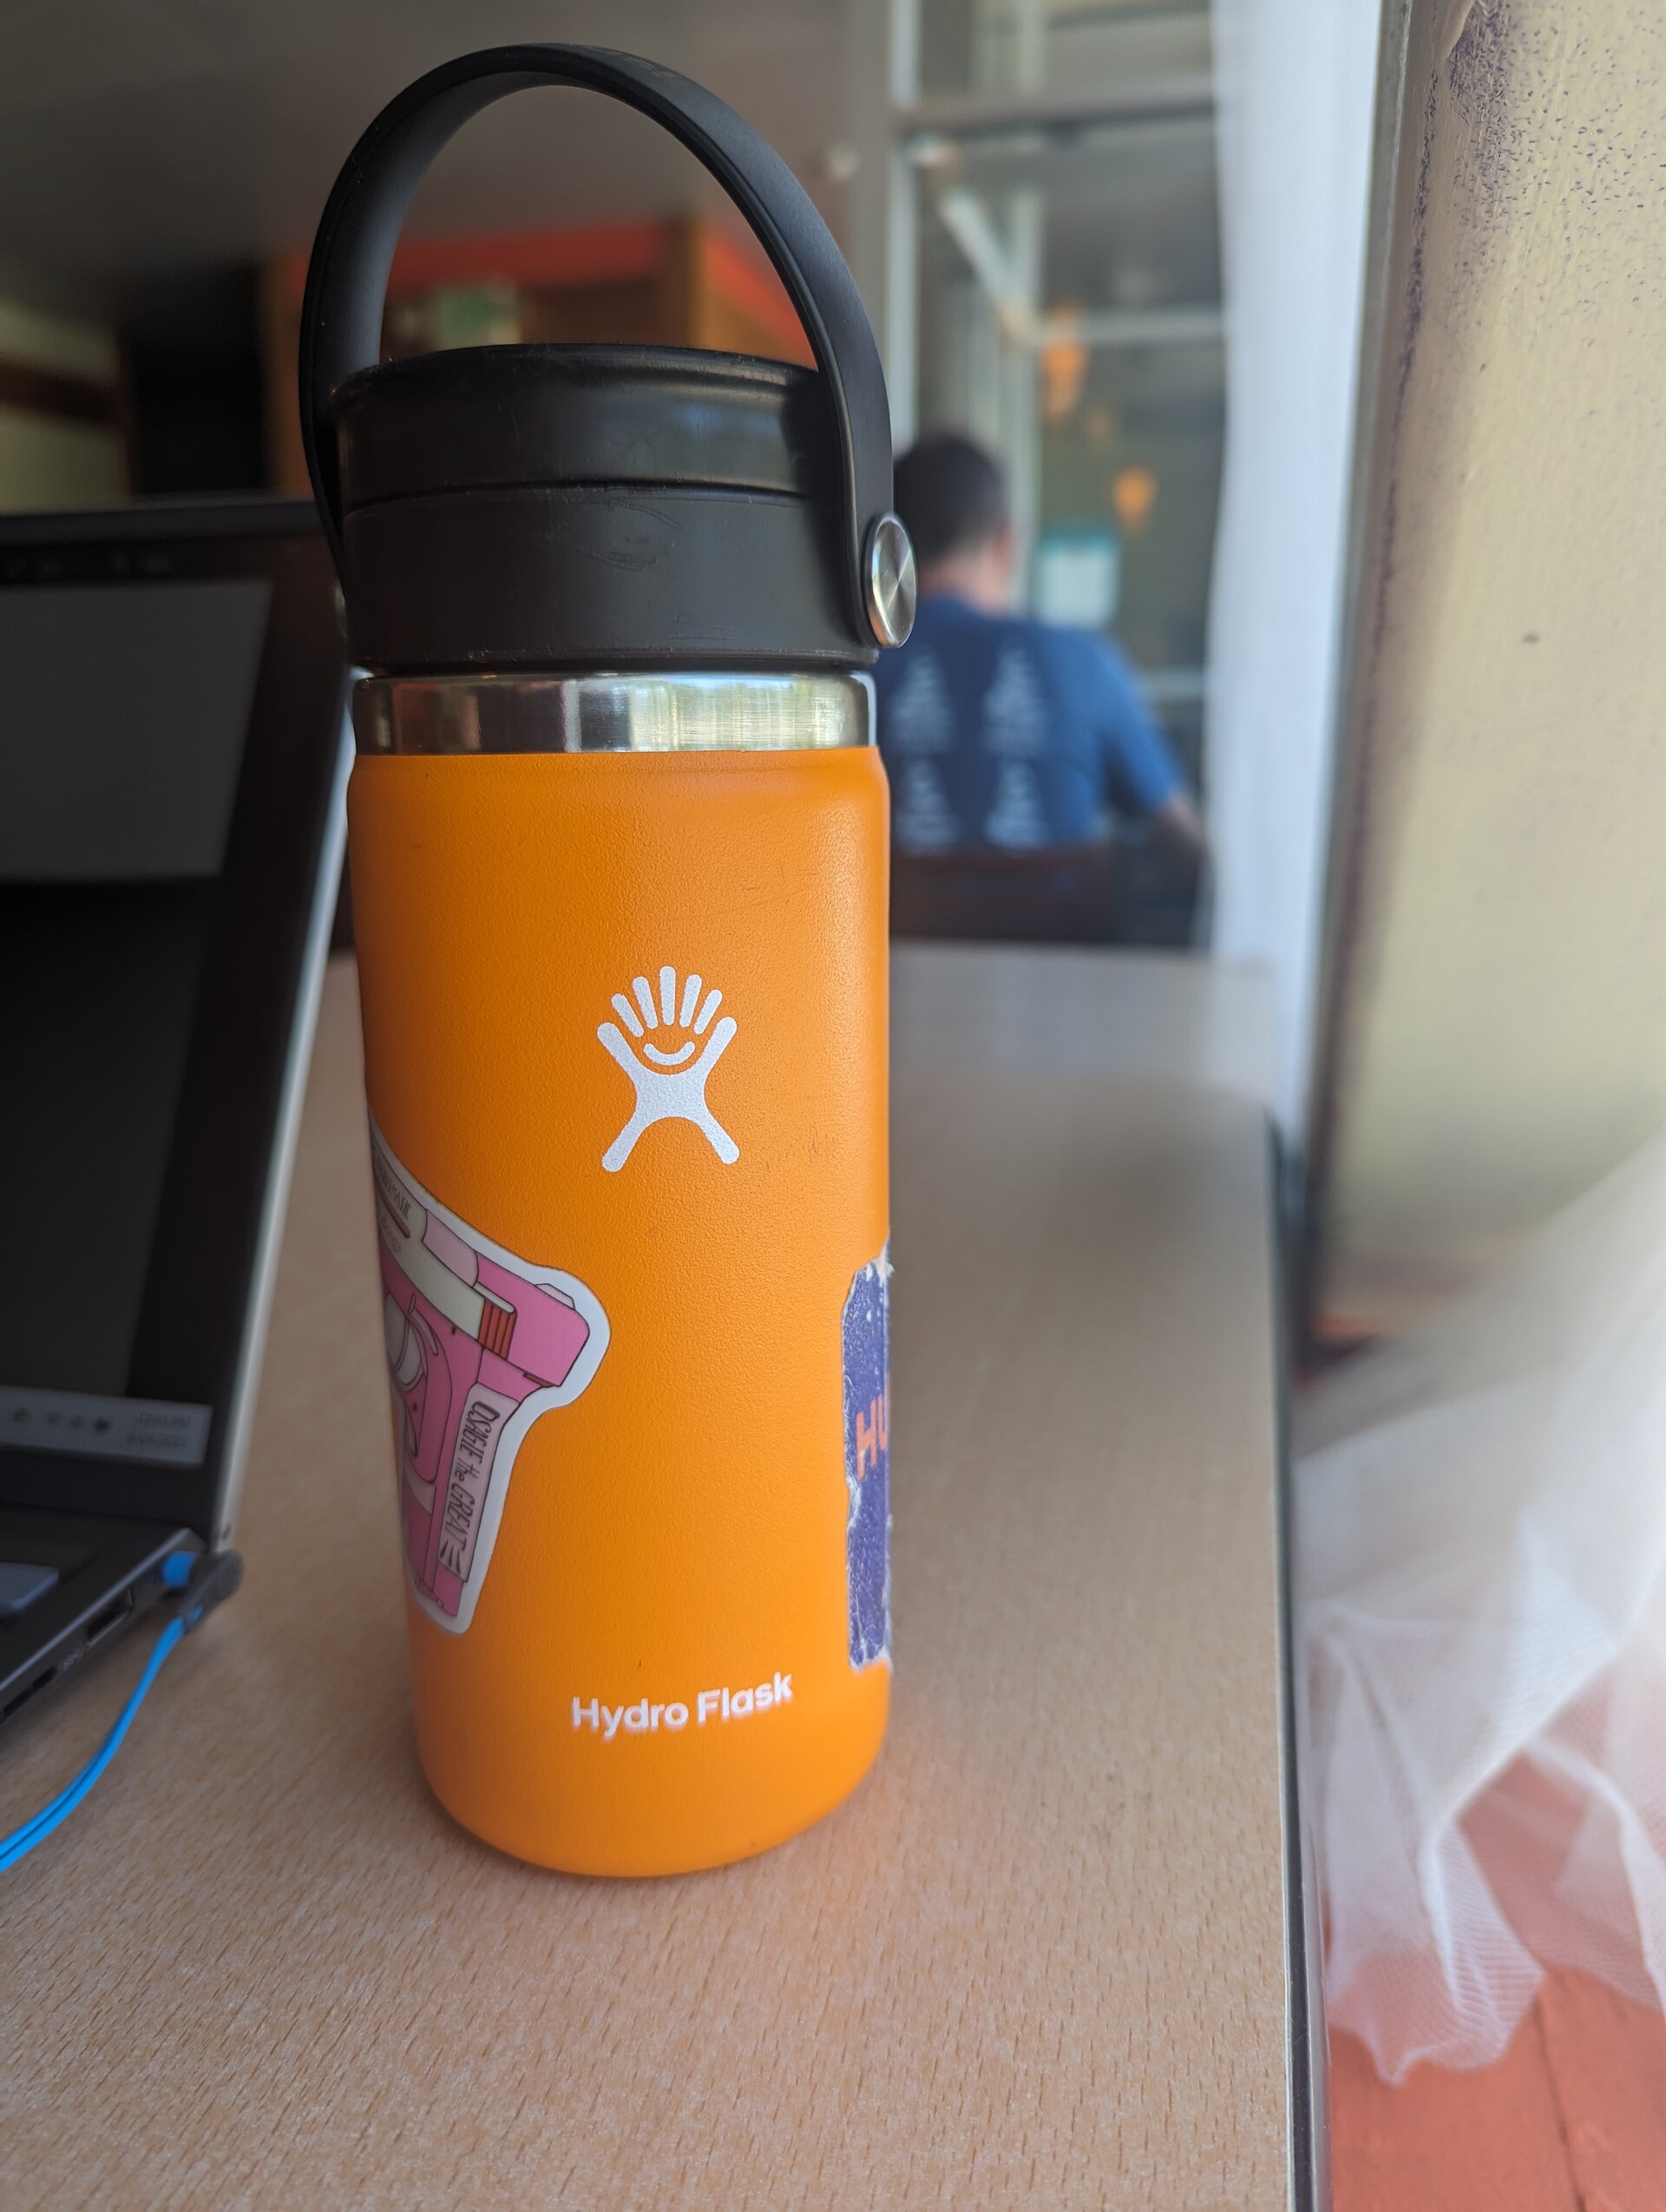 ArtStation - My Orange Hydro Flask Bottle